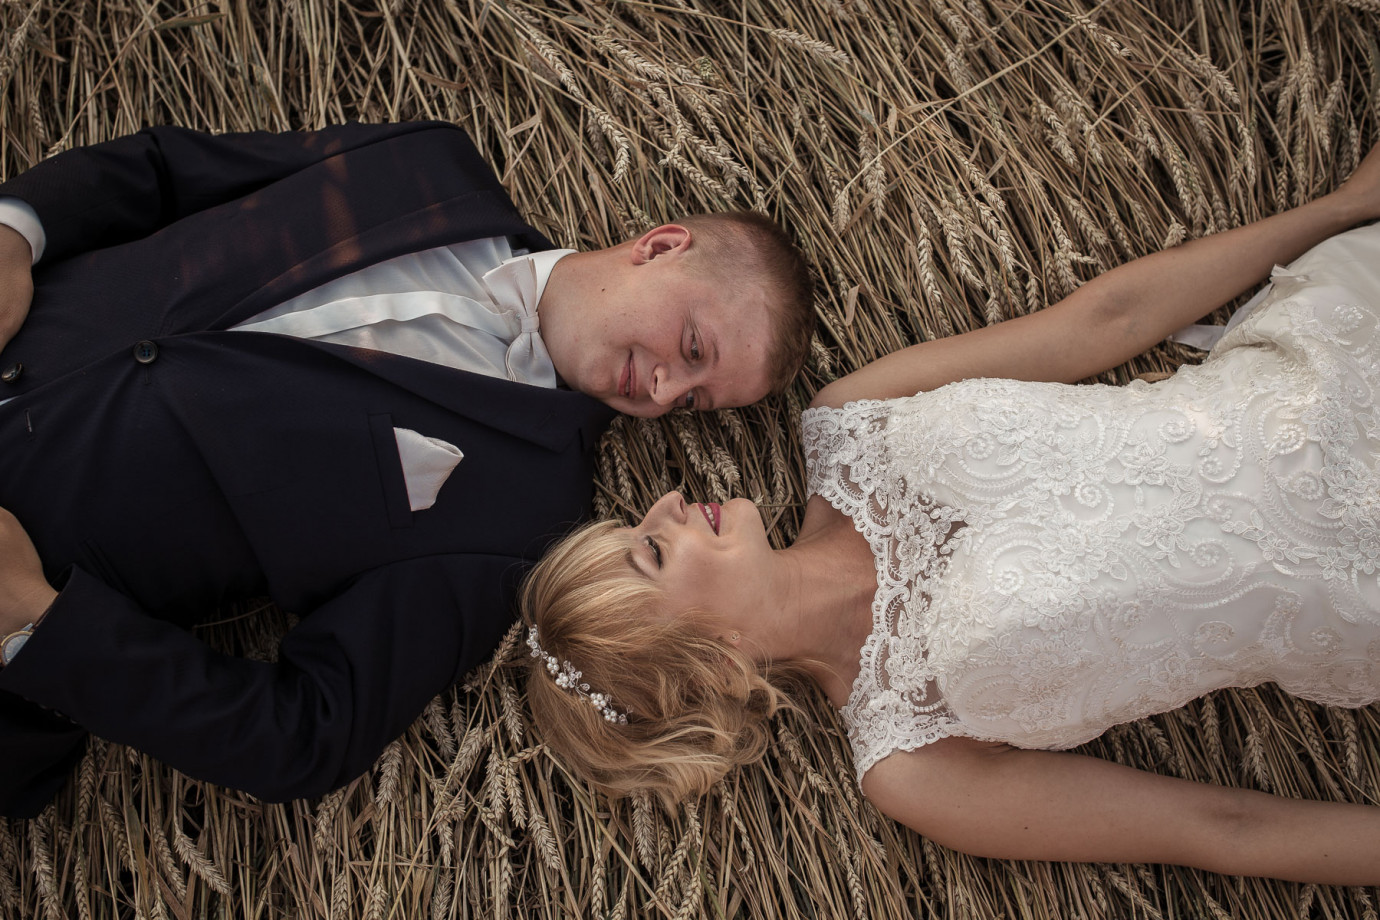 fotograf tarnow tomasz-lalewicz portfolio zdjecia slubne inspiracje wesele plener slubny sesja slubna